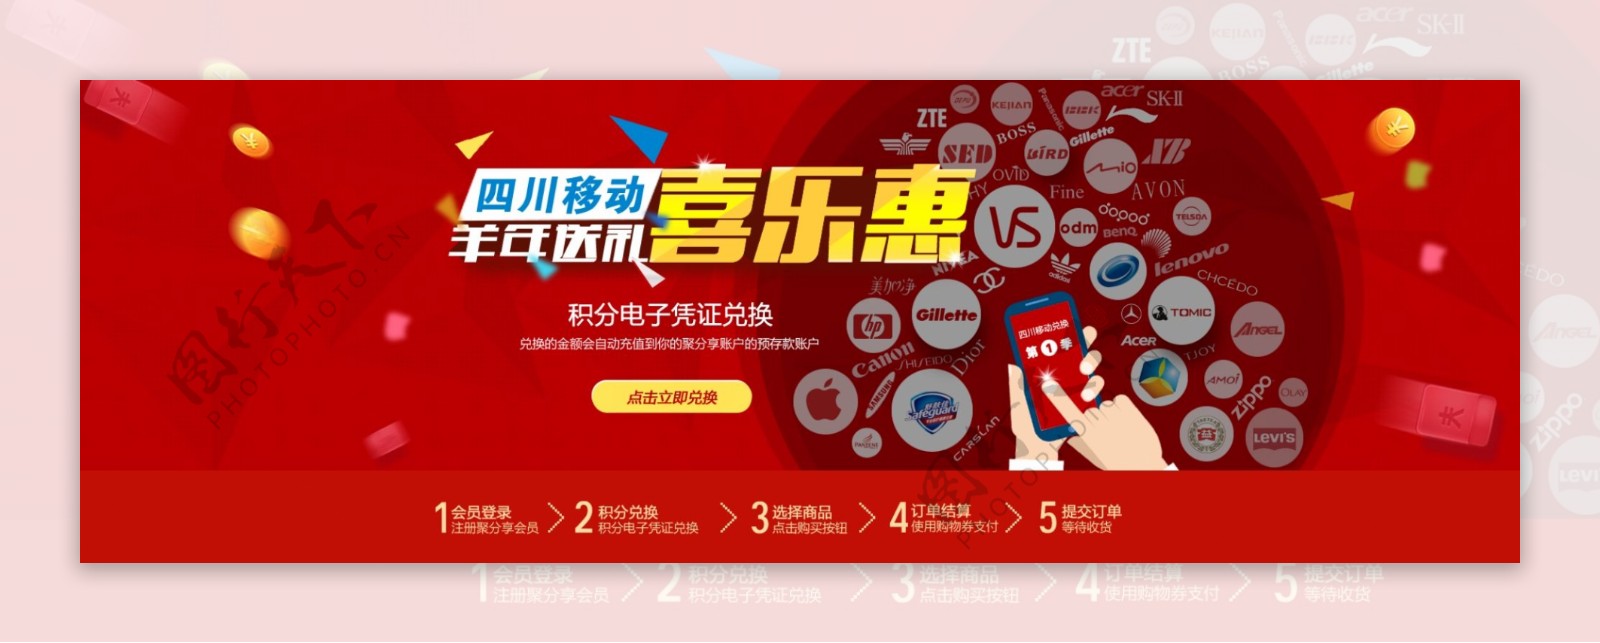 网店喜乐惠促销活动宣传海报图片